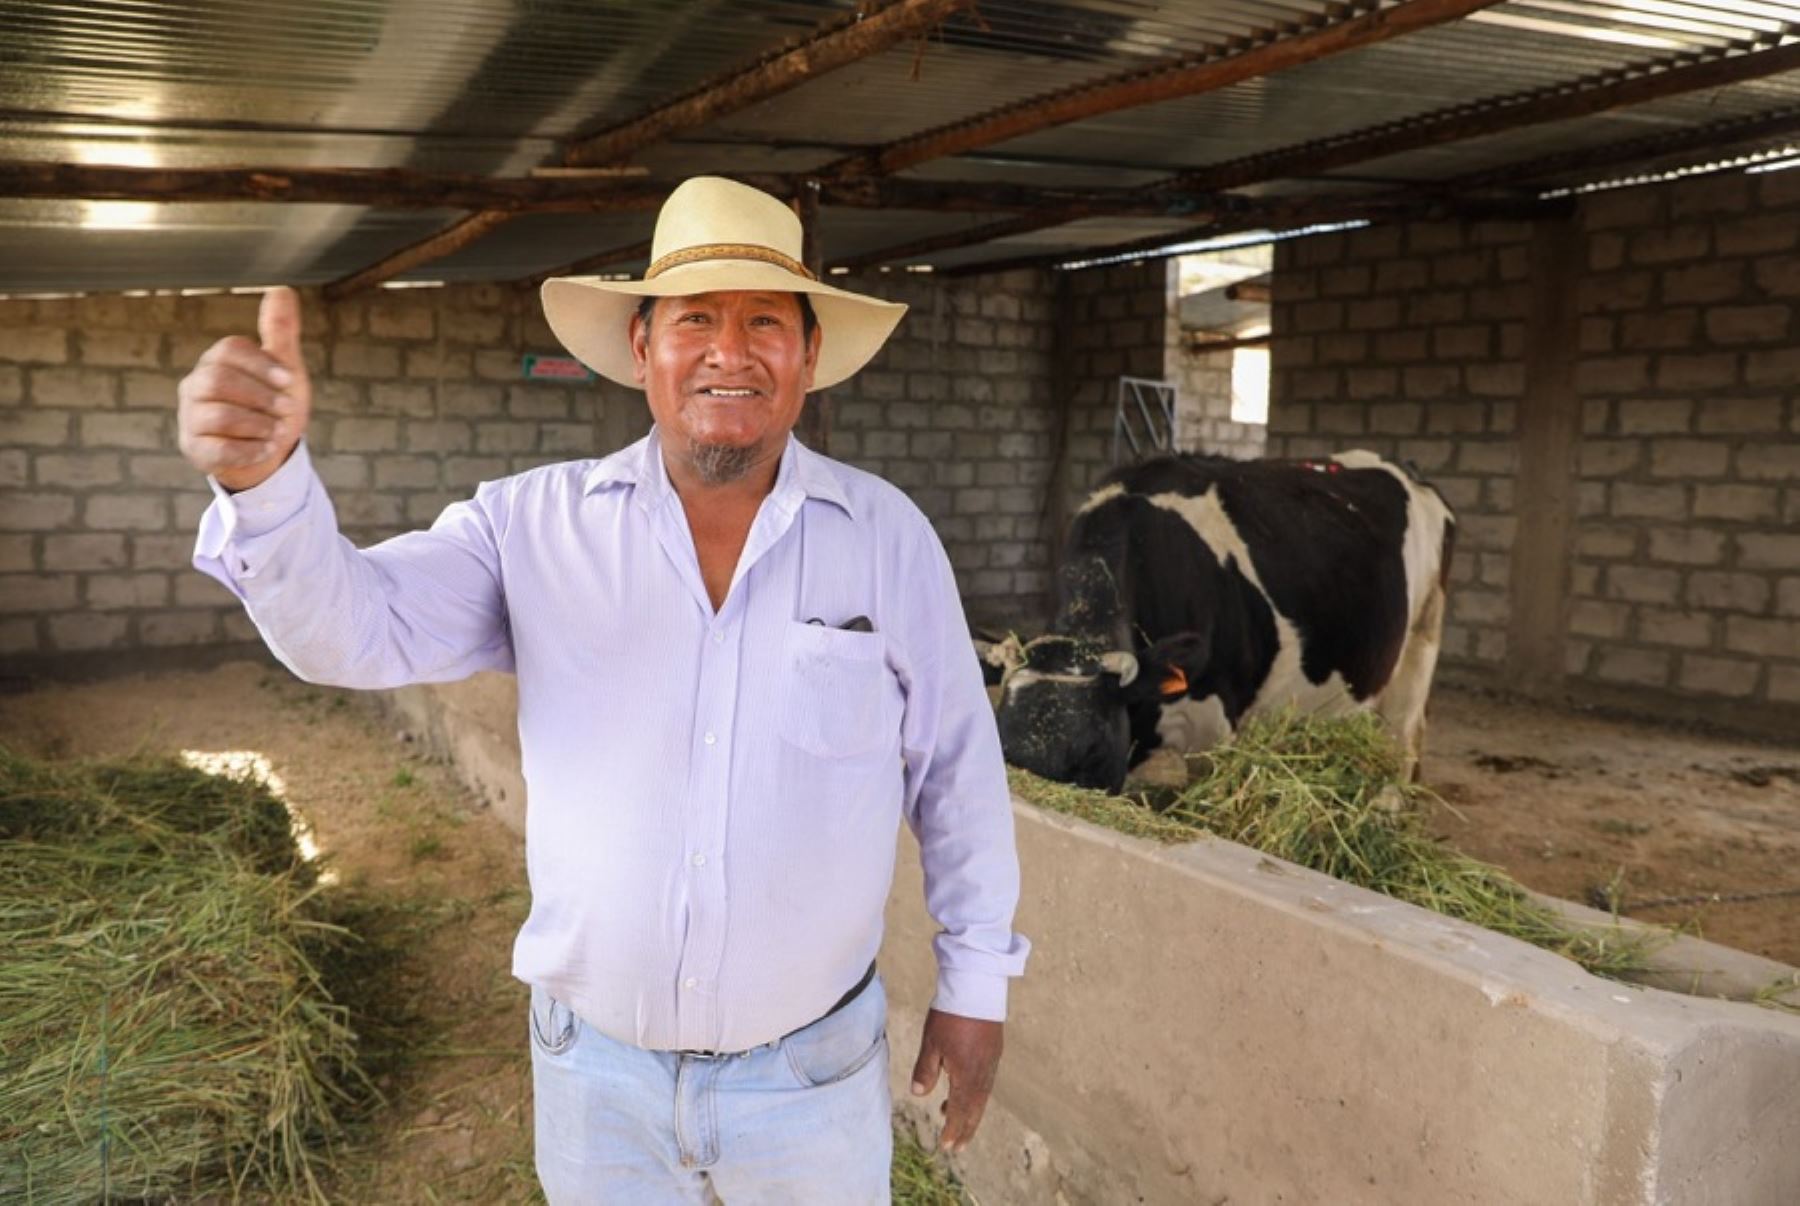 Los ganaderos podrán acceder a módulos que resguarden al ganado vacuno de los factores climáticos y heladas que son tan comunes en esta zona geográfica de la región de Arequipa.